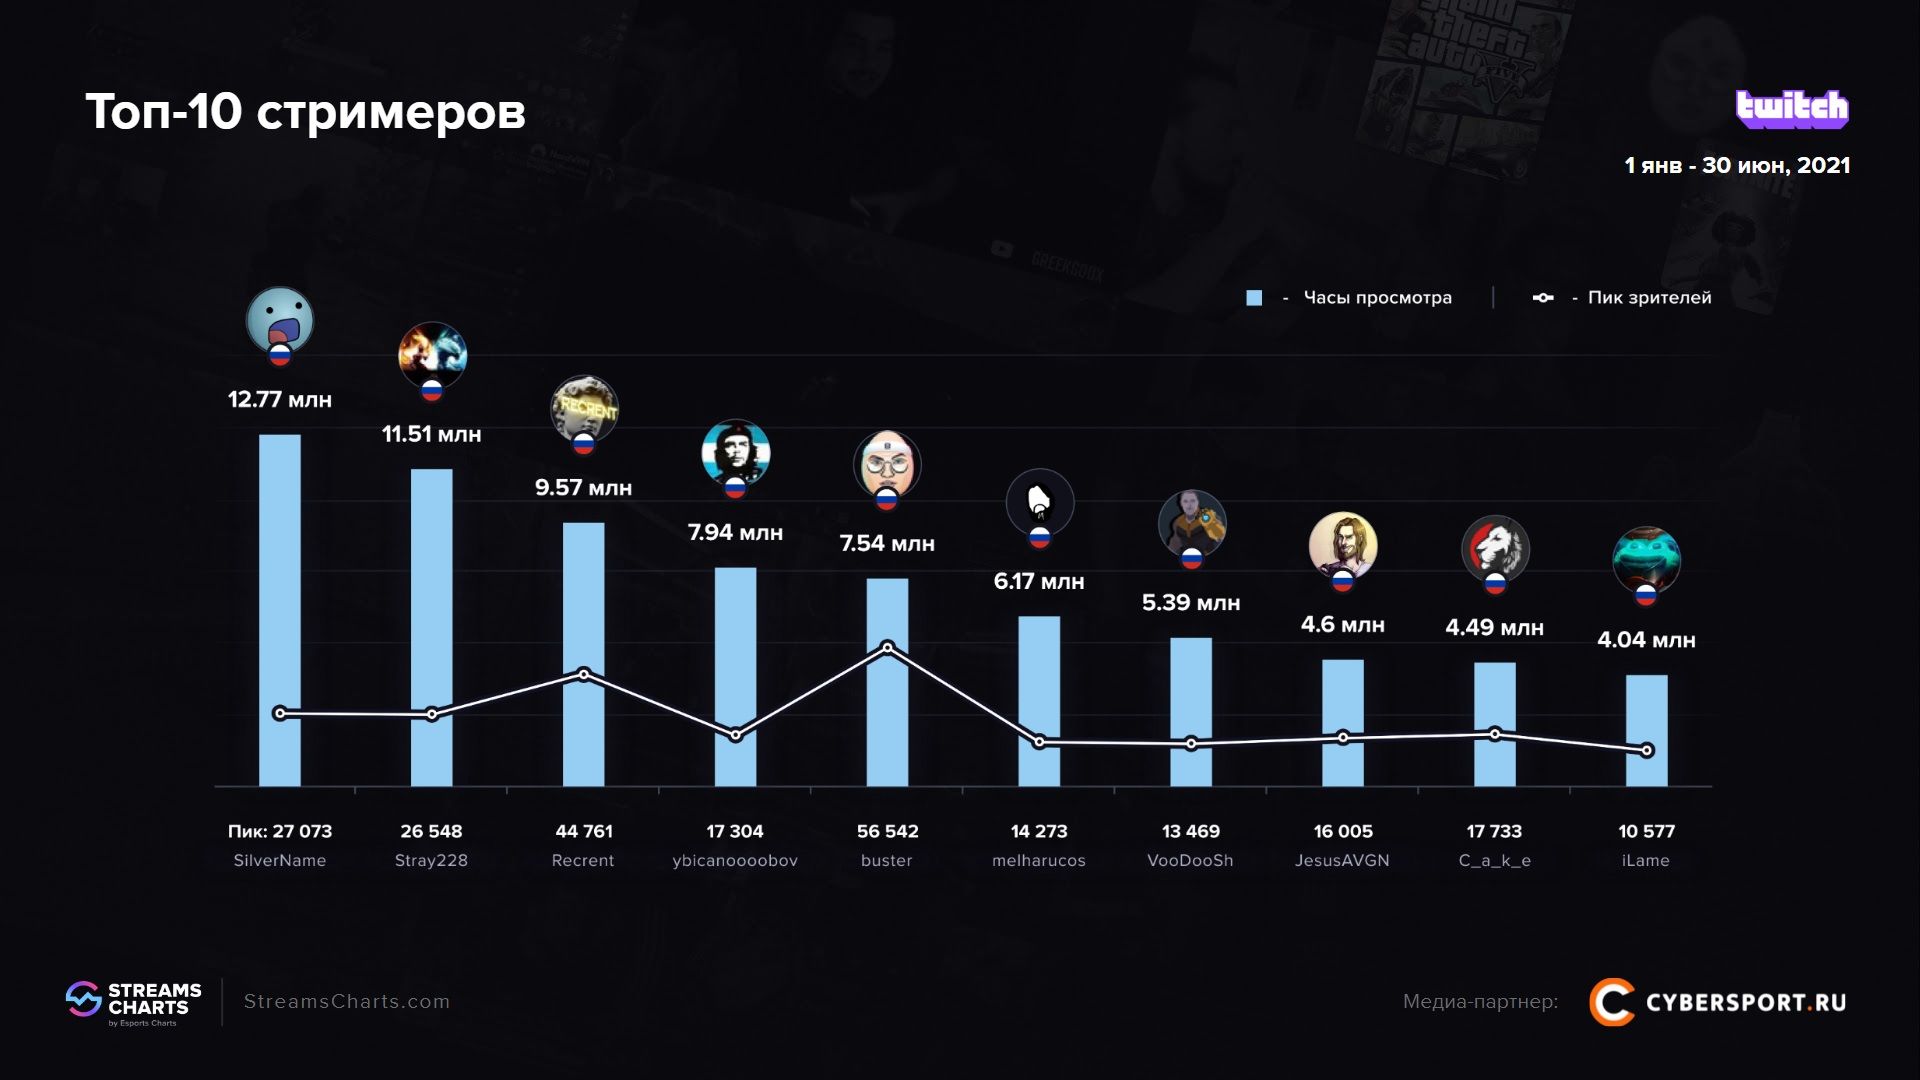 Самые популярные русскоязычные стримеры на Twitch в первой половине 2021 года